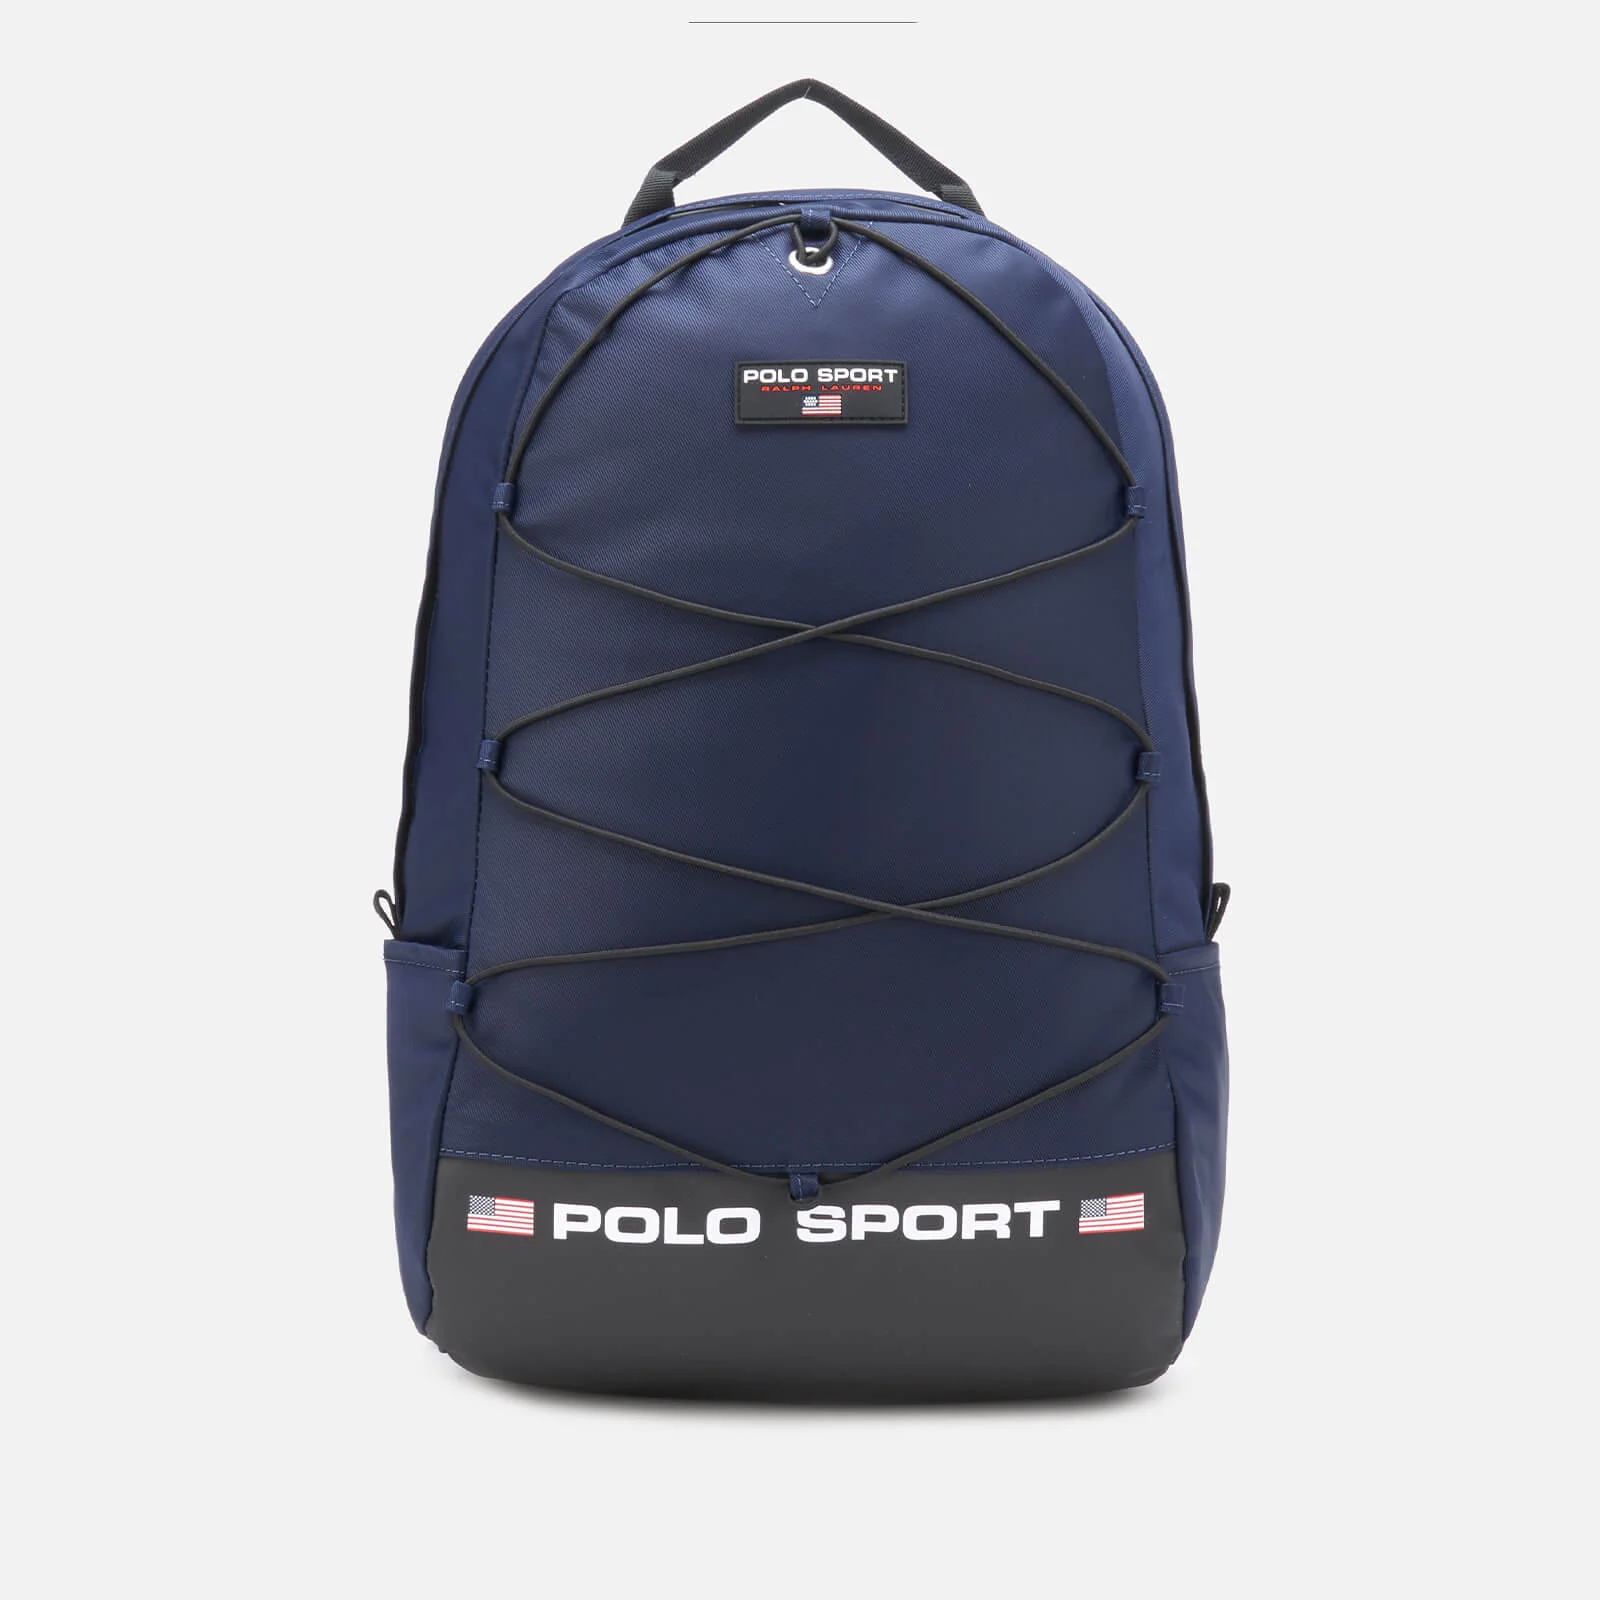 Polo Ralph Lauren Men's Polo Sport Backpack - Navy Image 1